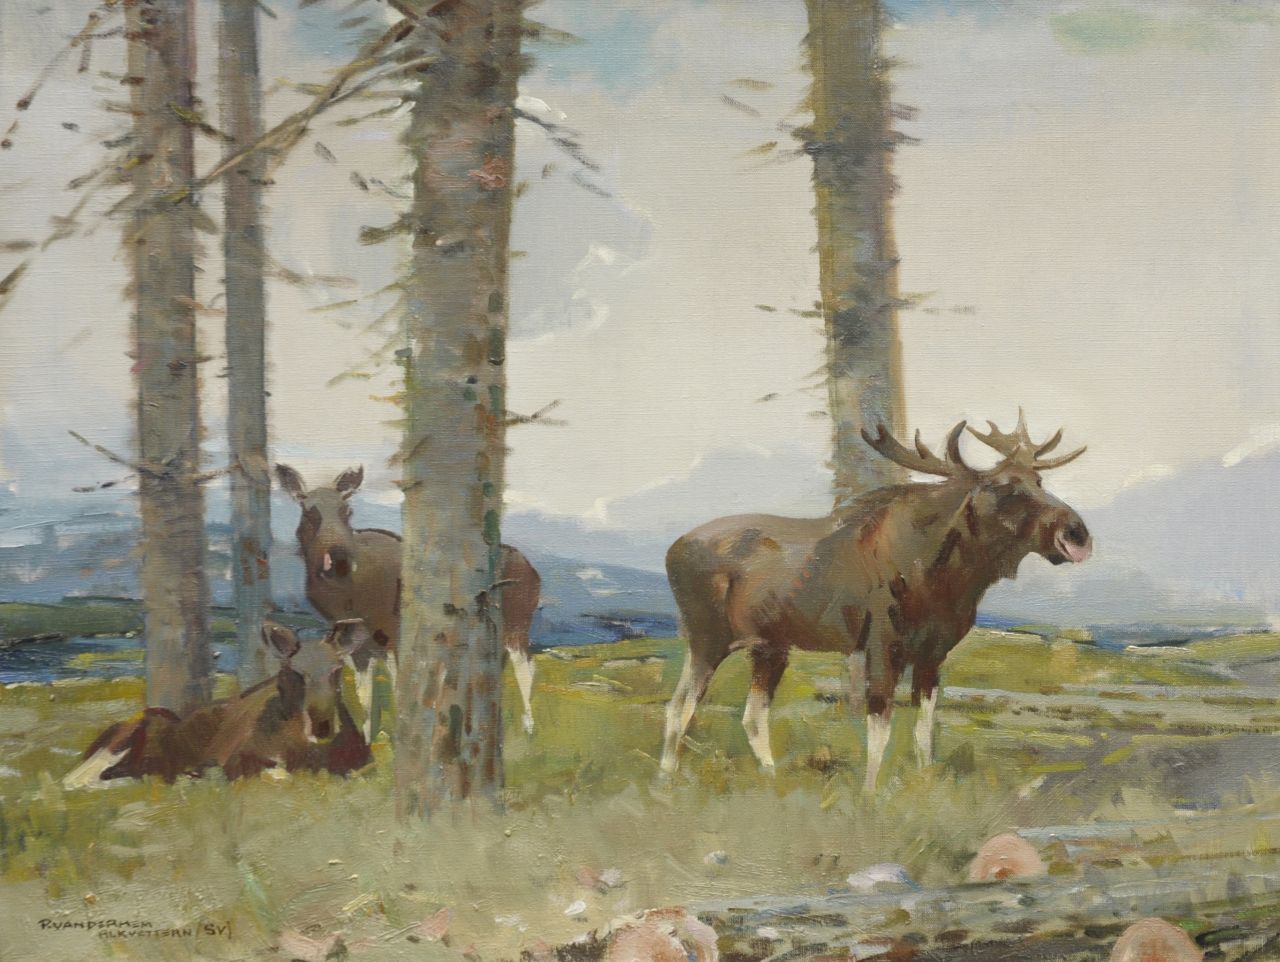 Hem P. van der | Pieter 'Piet' van der Hem, Elks near Alkvettern, Zweden, oil on canvas 60.5 x 80.5 cm, signed l.l.